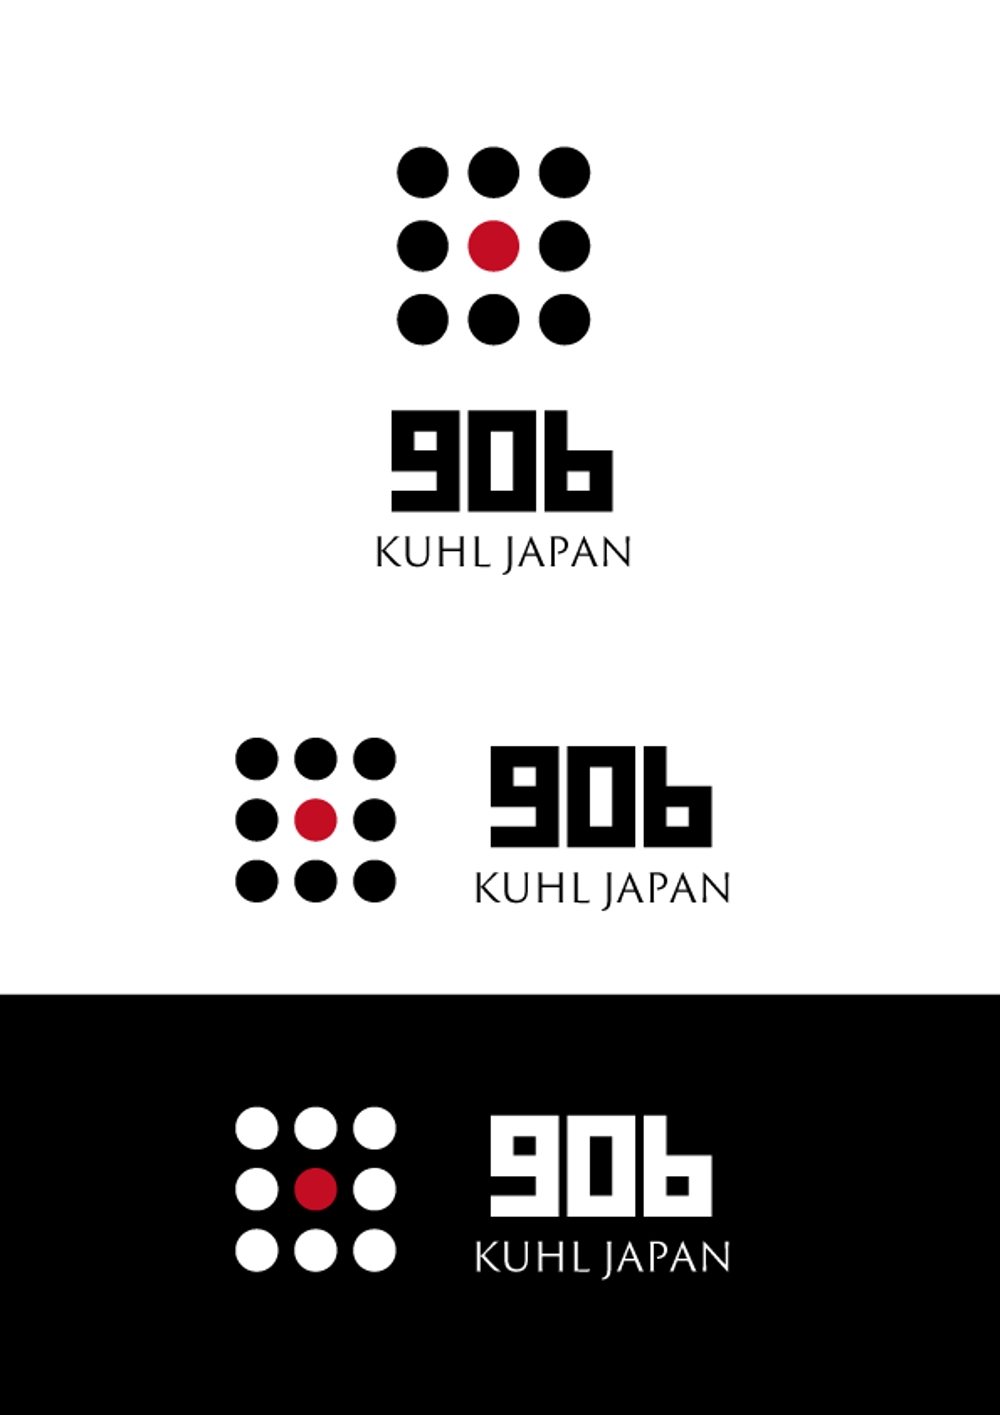 自動車カスタムパーツメーカー「KUHL」が新たに立ち上げるアパレルブランド「９０６」のロゴマーク制作